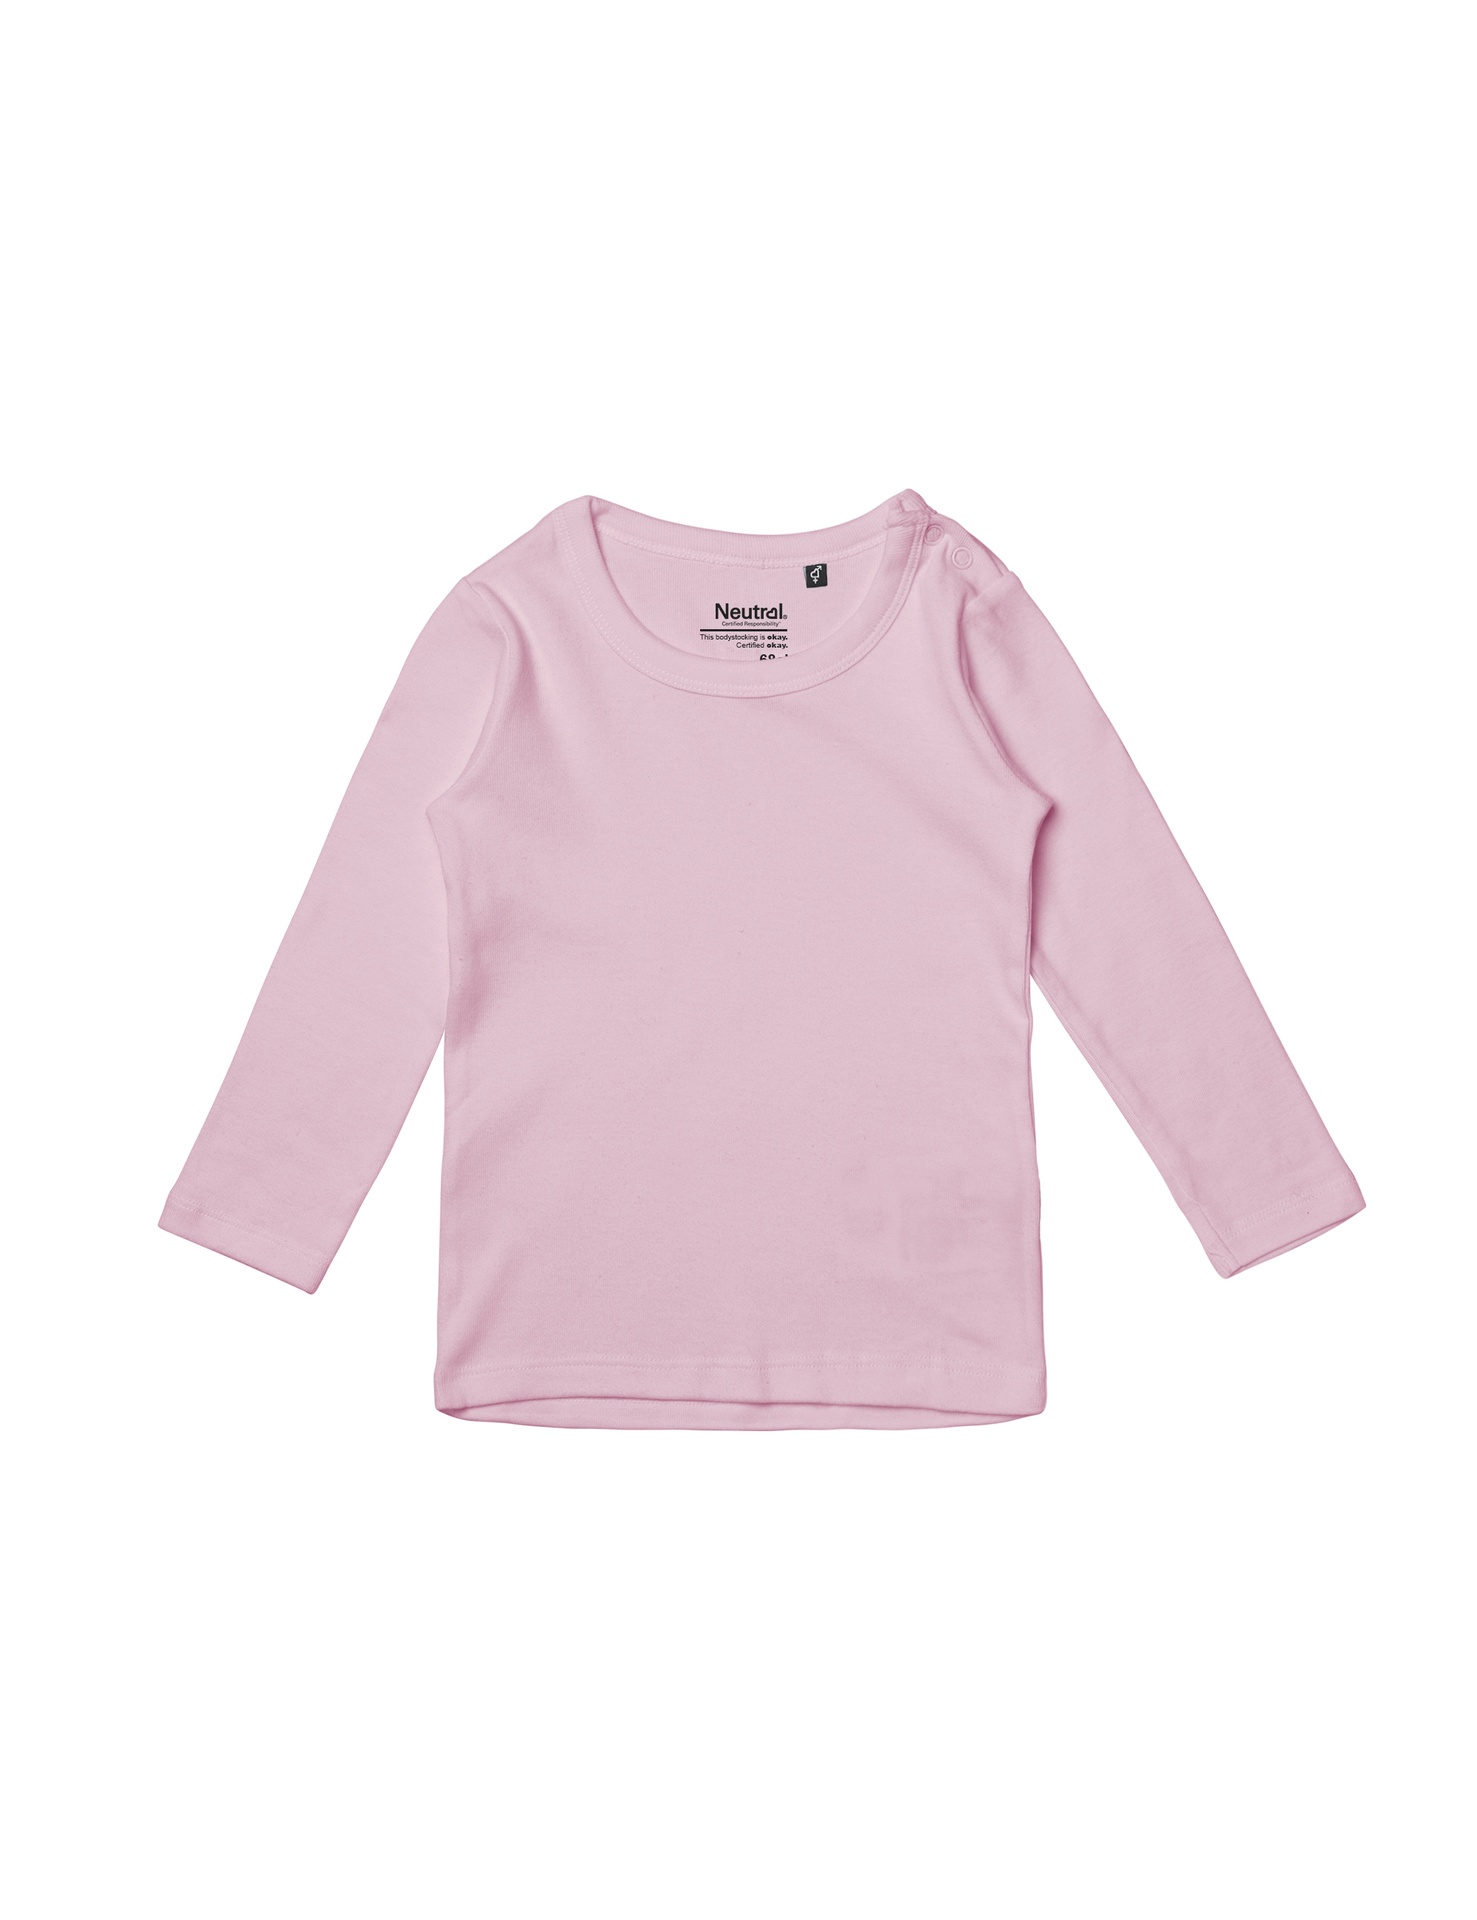 [PR/05622] Babies Long Sleeve T-Shirt (Light Pink 20, 62 cm)